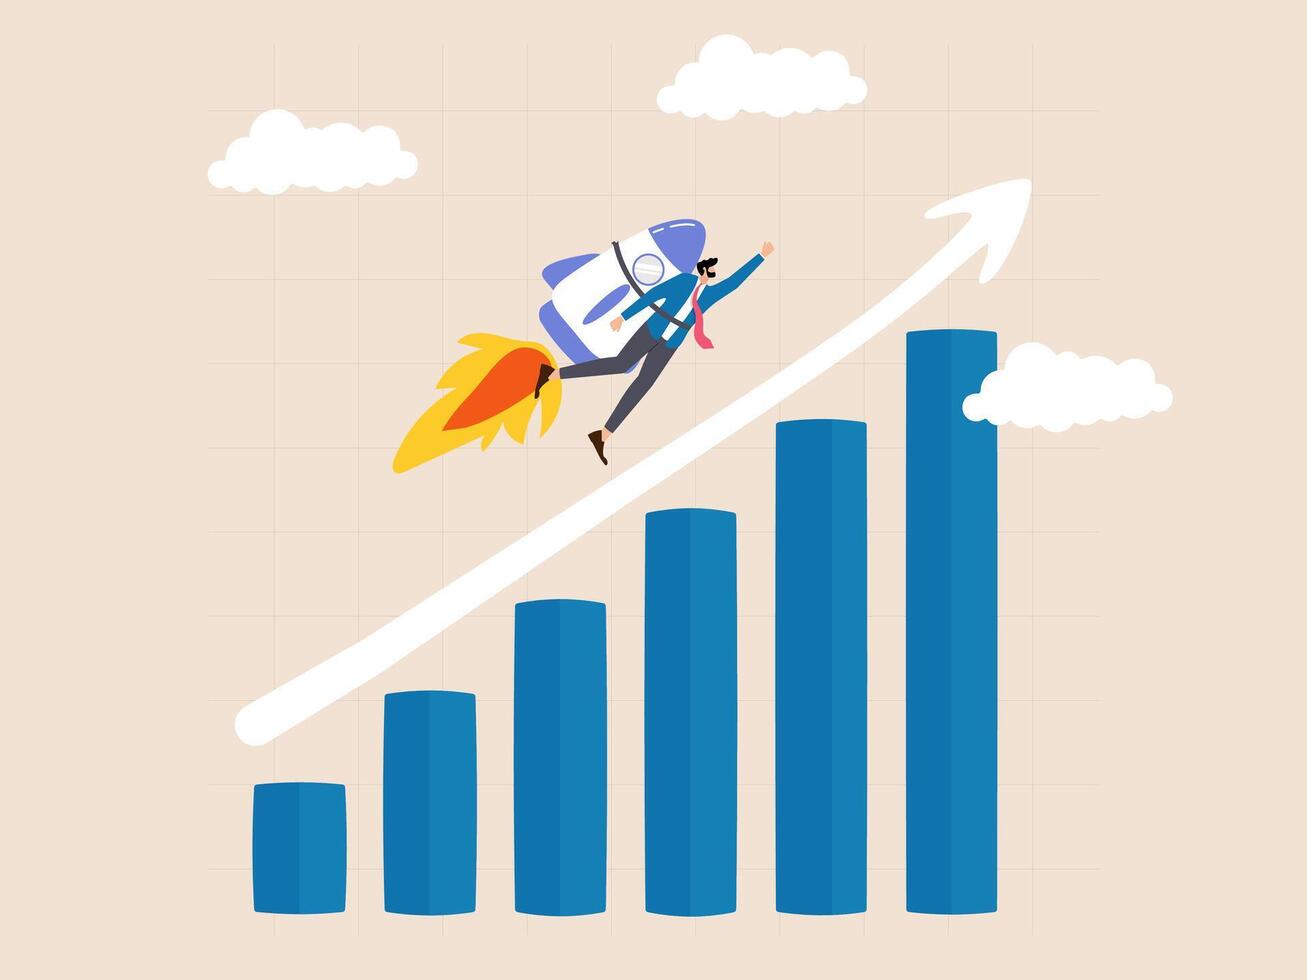 paseo el cohete como el grafico se eleva esta ilustración crea un imagen de rápido Progreso y ambición líder a el pináculo de negocio éxito. vector